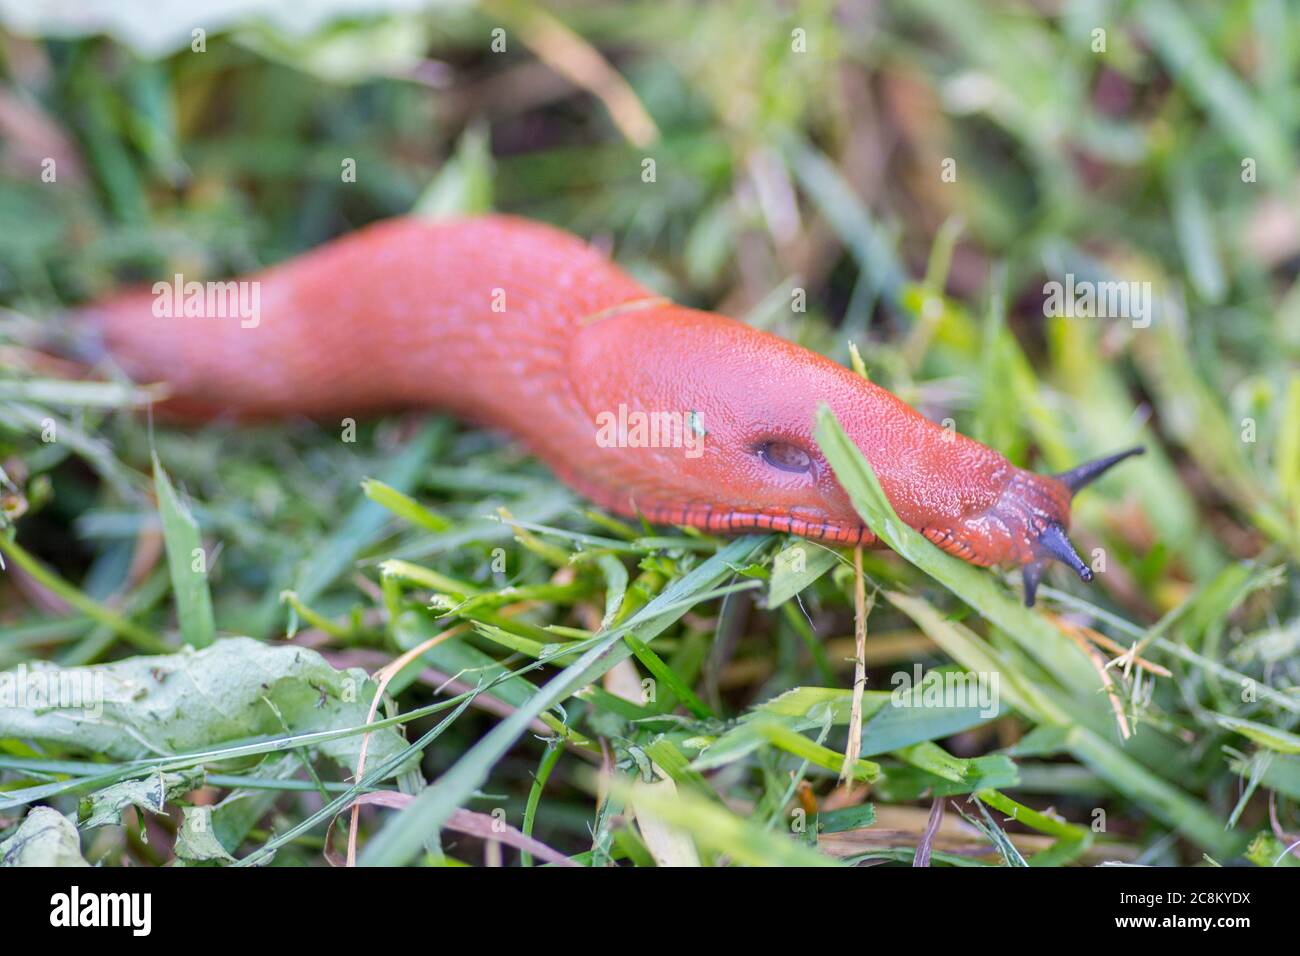 Red slug in the grass Stock Photo